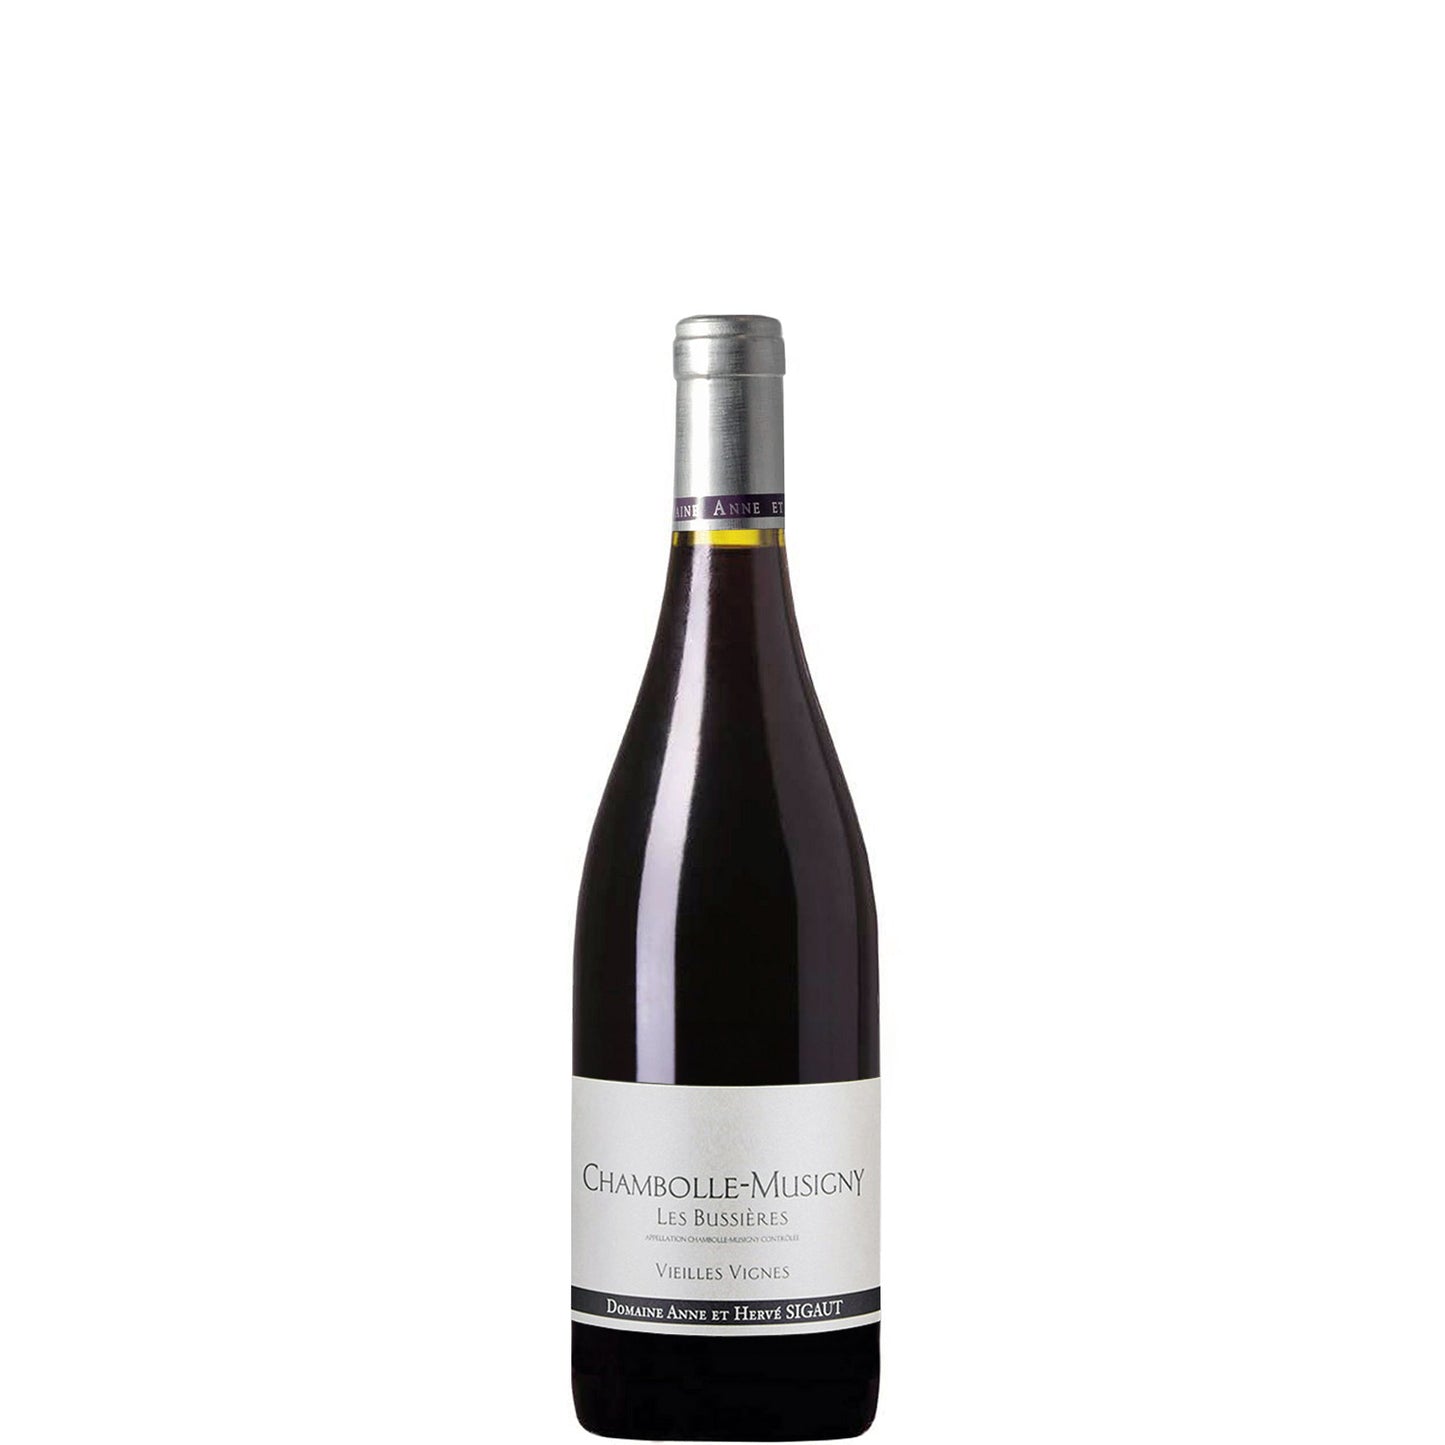 Chambolle-Musigny 'Les Bussières' Vieilles Vignes, Domaine Sigaut, 2019 - Half-bottle